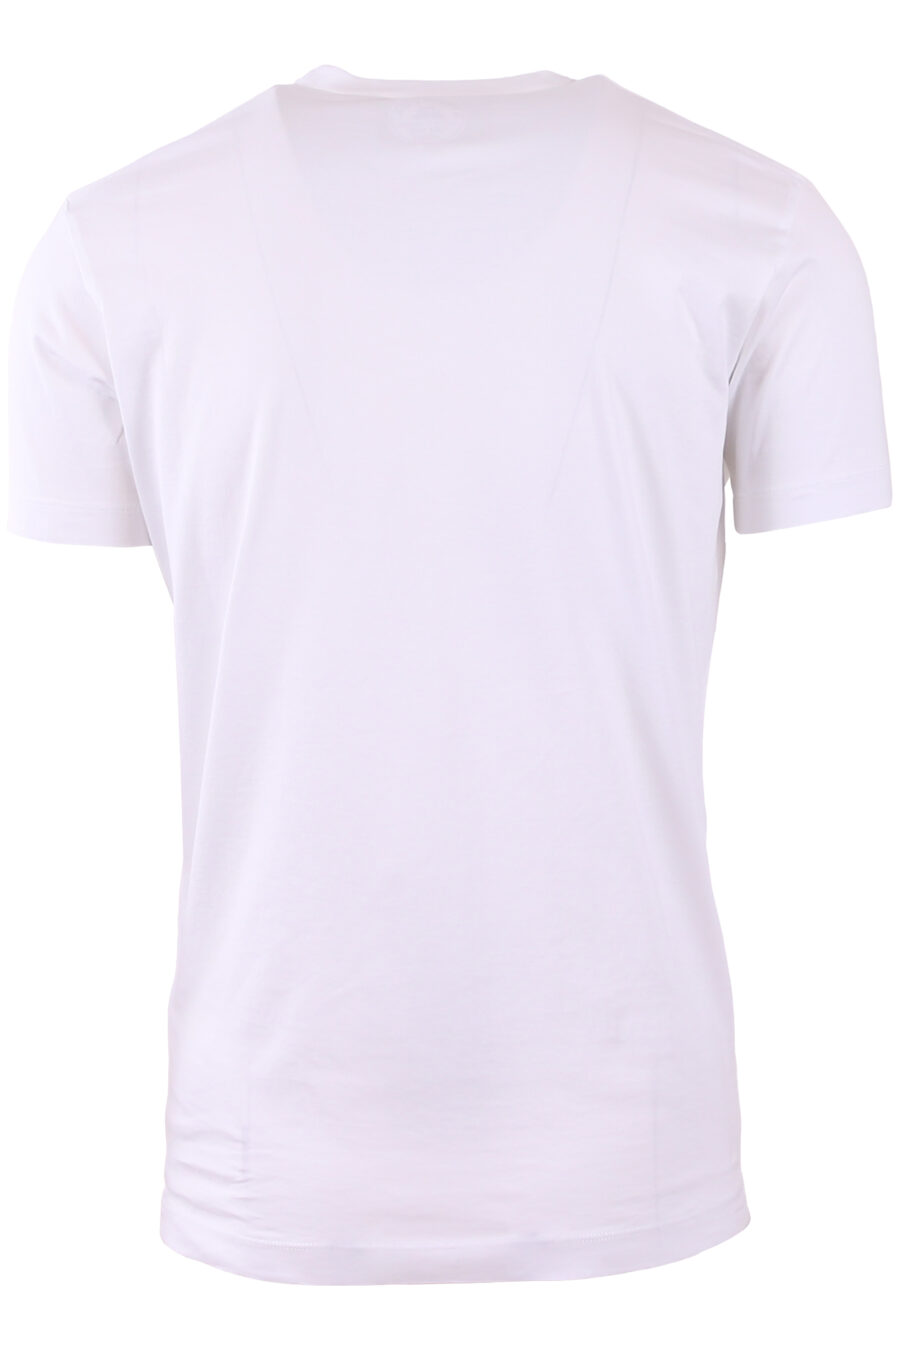 maxilogo "dsquared2 milano" T-shirt blanc - IMG 3571 1